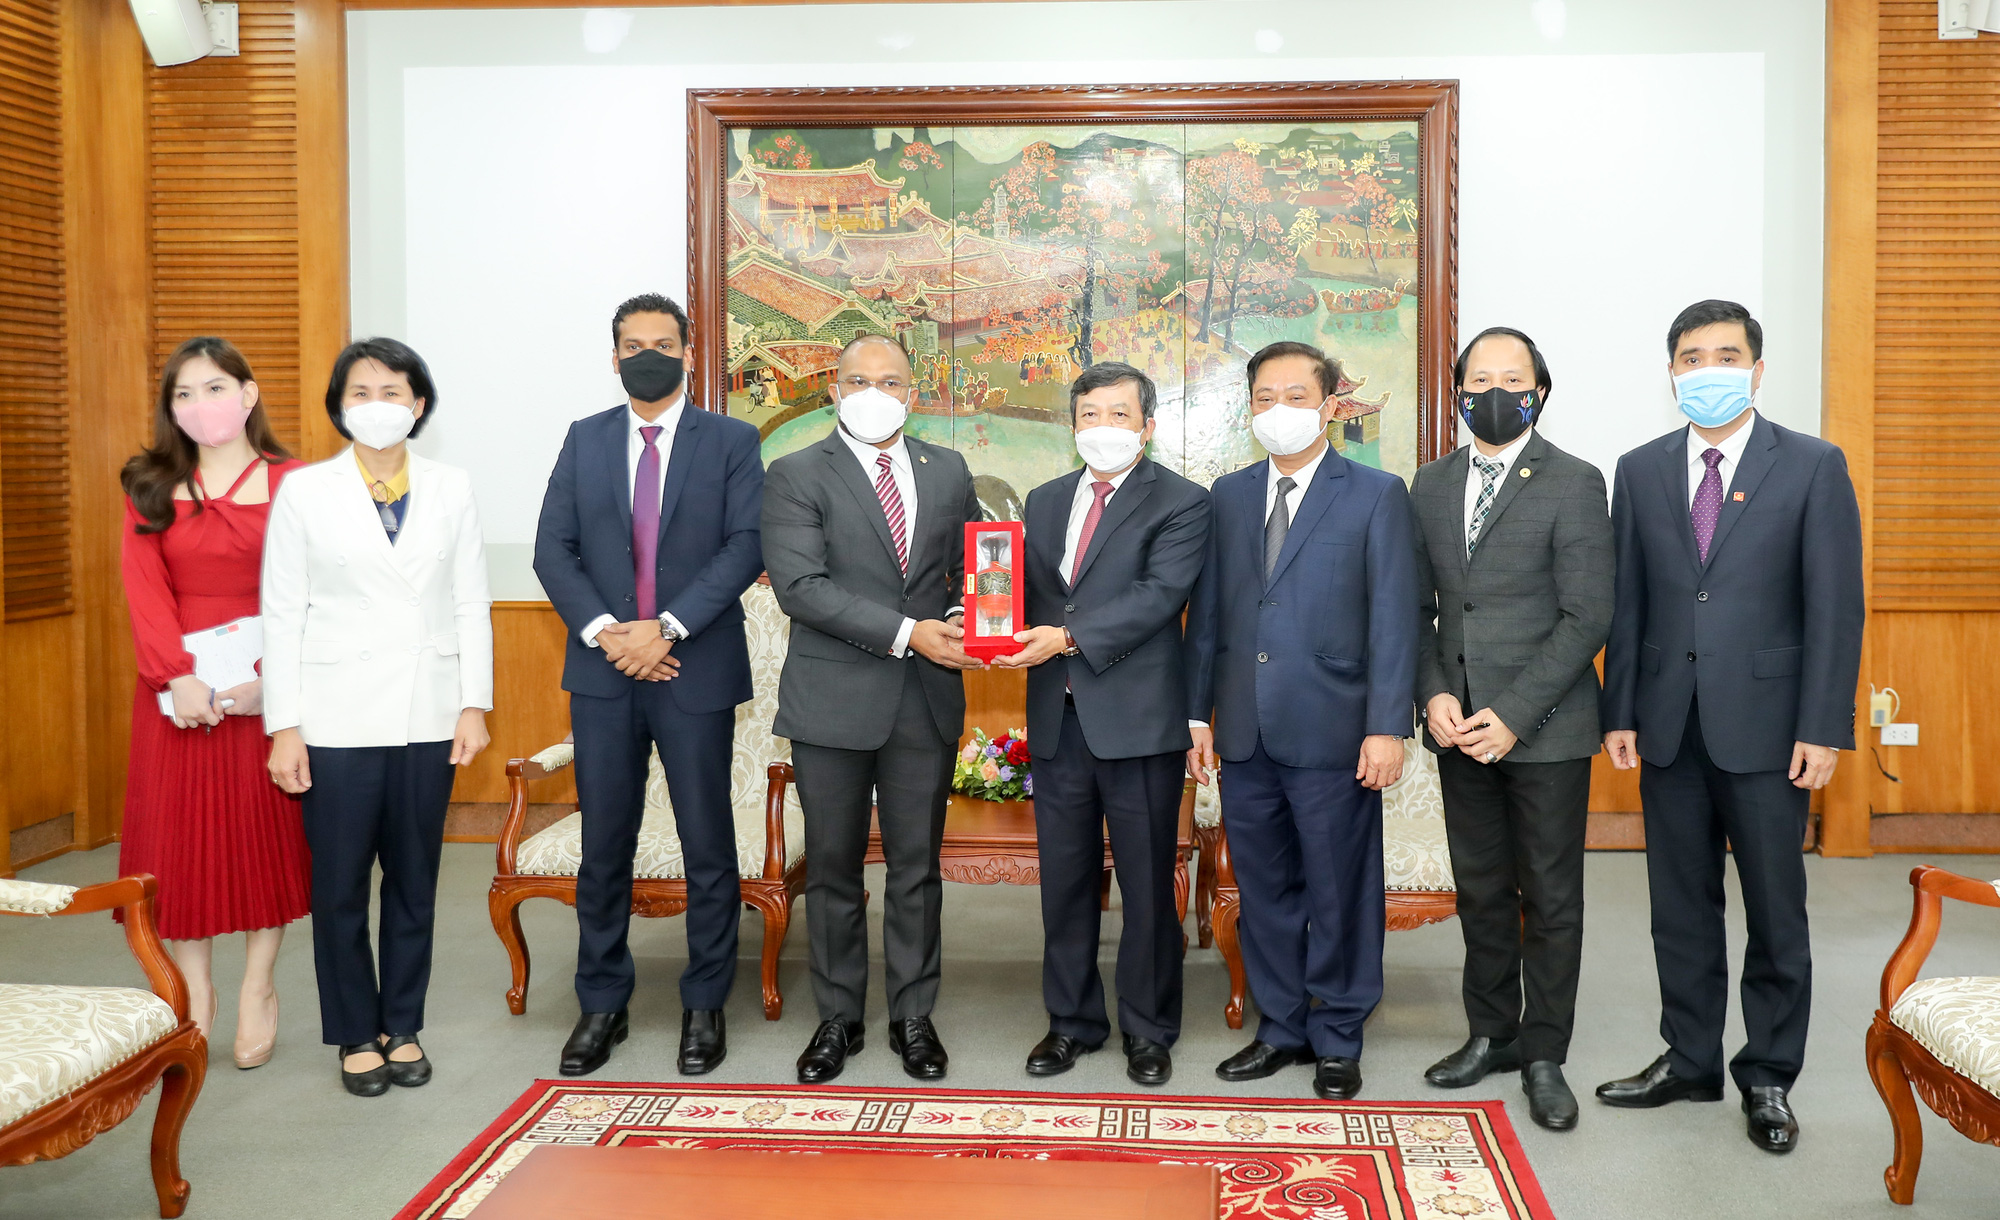 Thứ trưởng Đoàn Văn Việt tiếp Đại sứ Cộng hòa Dân chủ Liên bang Nepal và Đại sứ Cộng hòa Maldives tại Việt Nam - Ảnh 4.